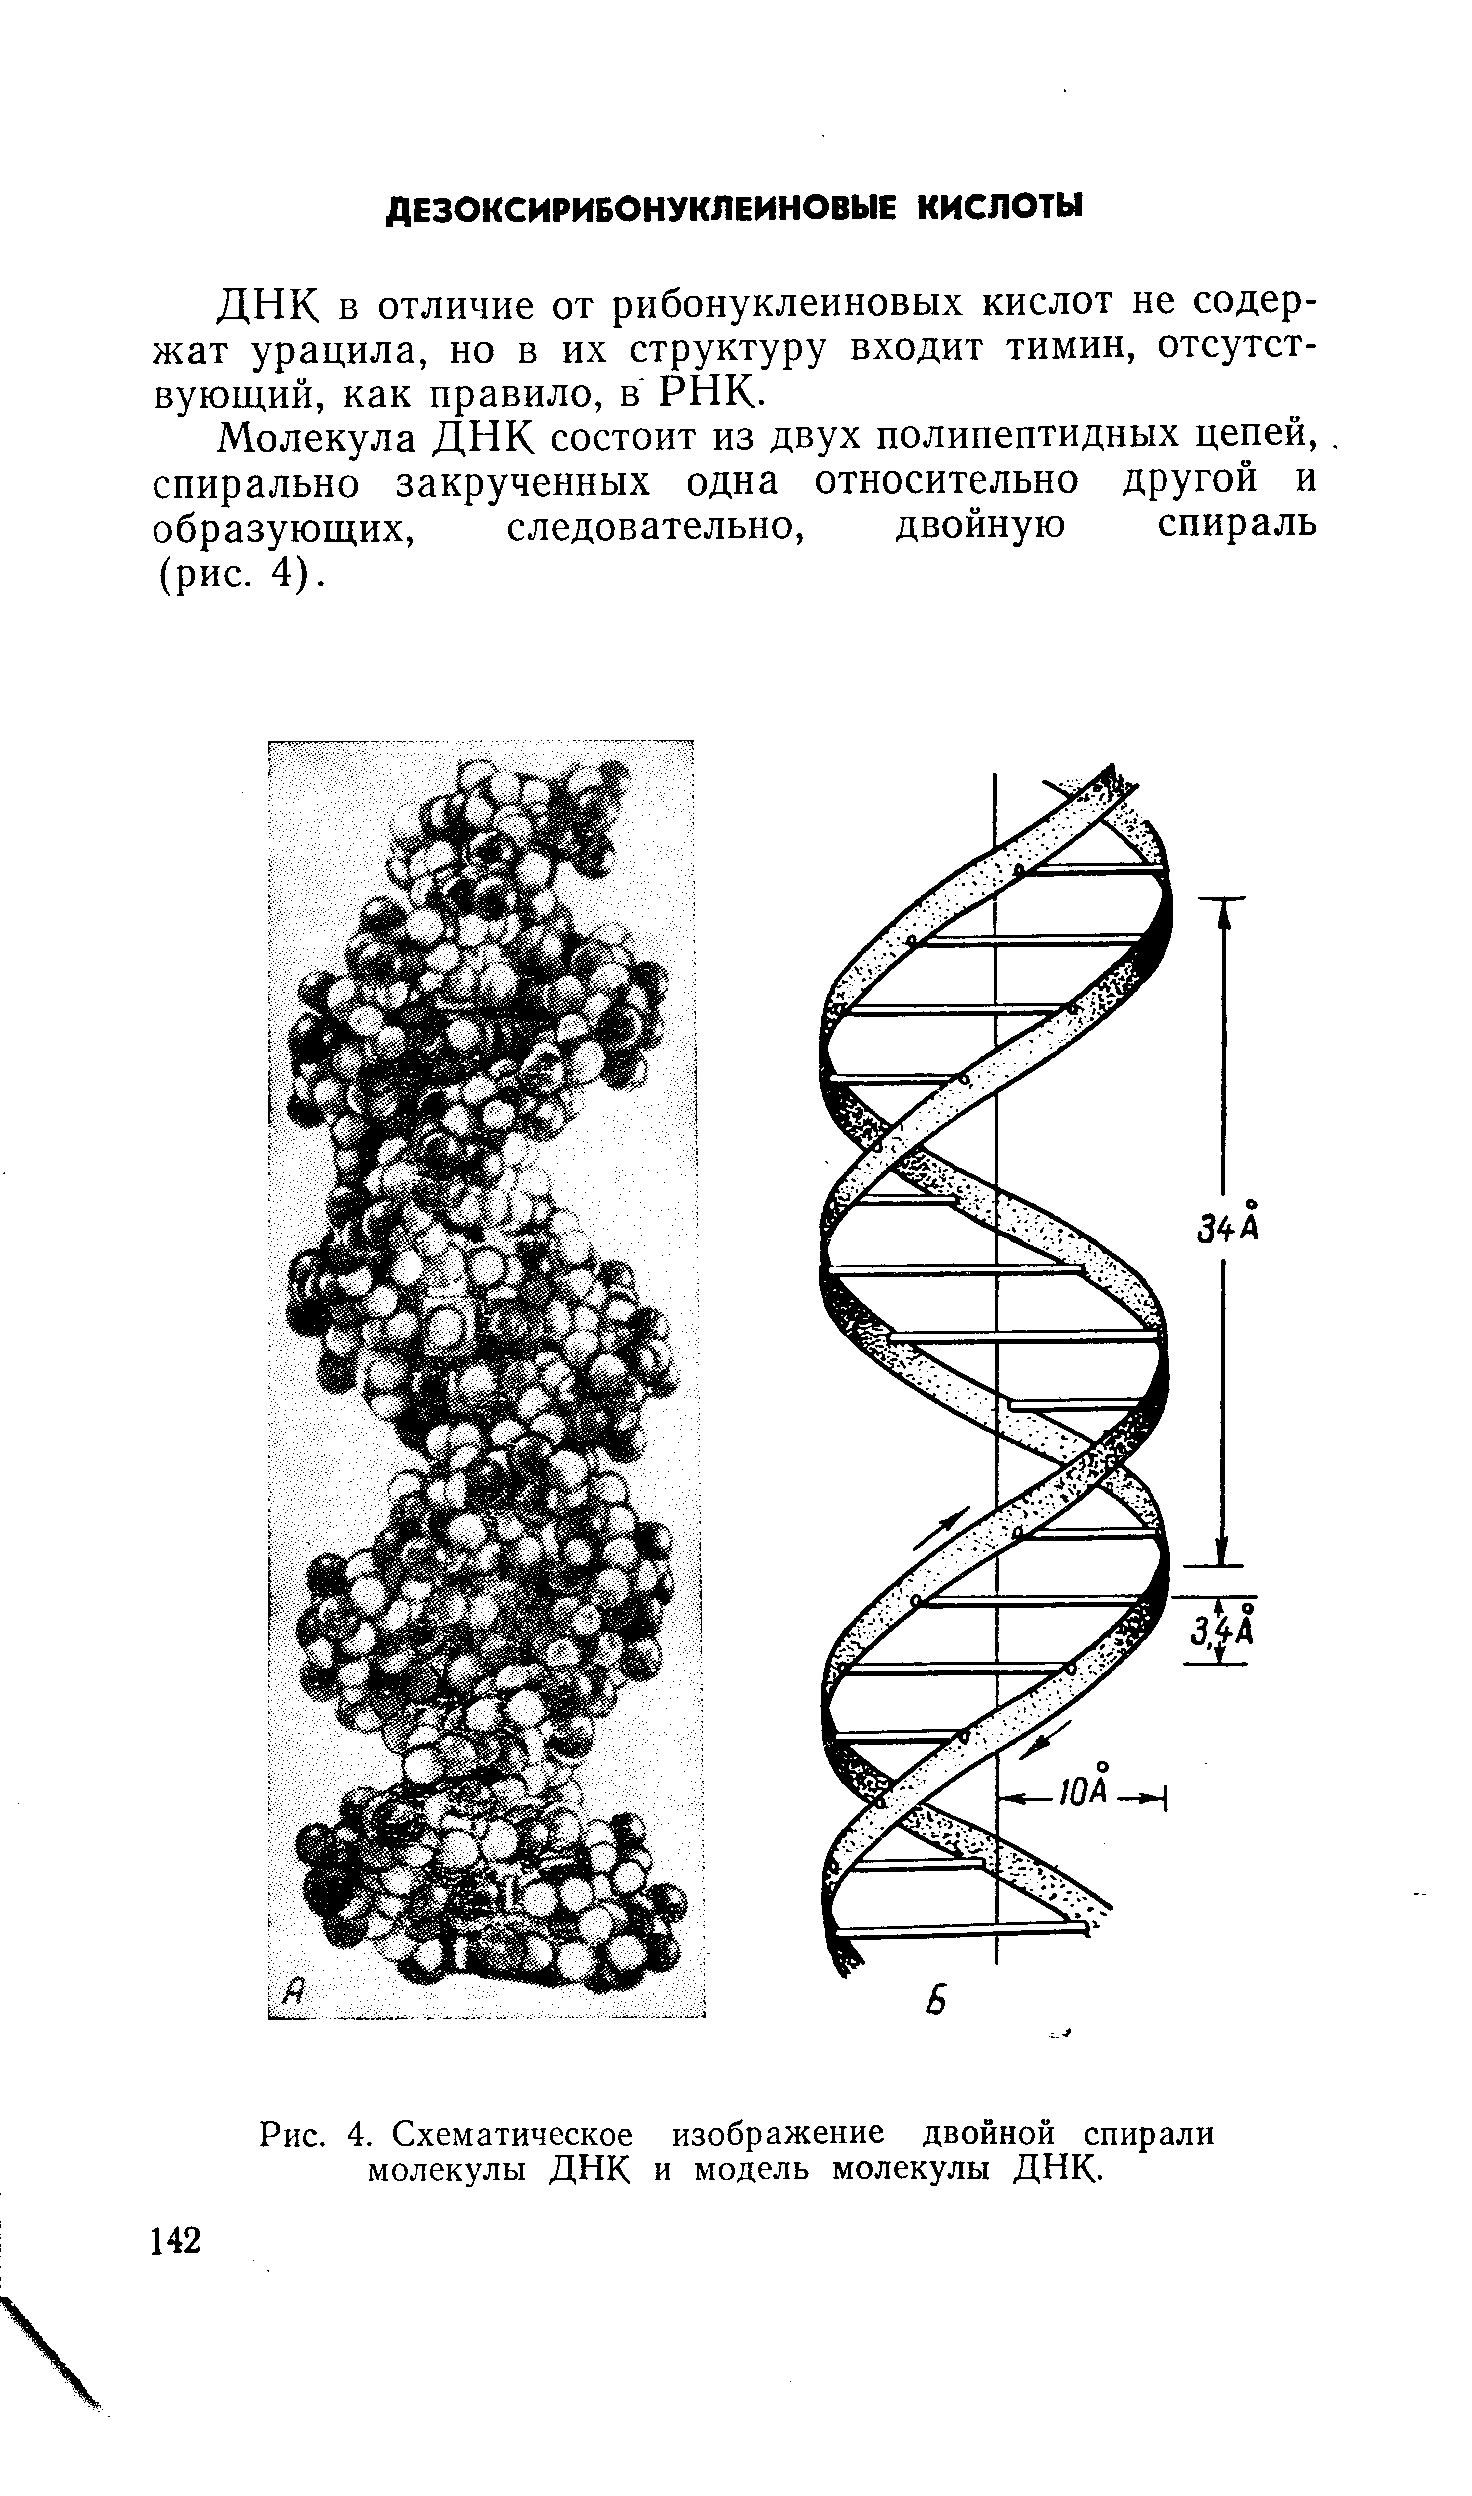 ДНК в отличие от рибонуклеиновых кислот не содержат урацила, но в их структуру входит тимин, отсутствующий, как правило, в РНК.